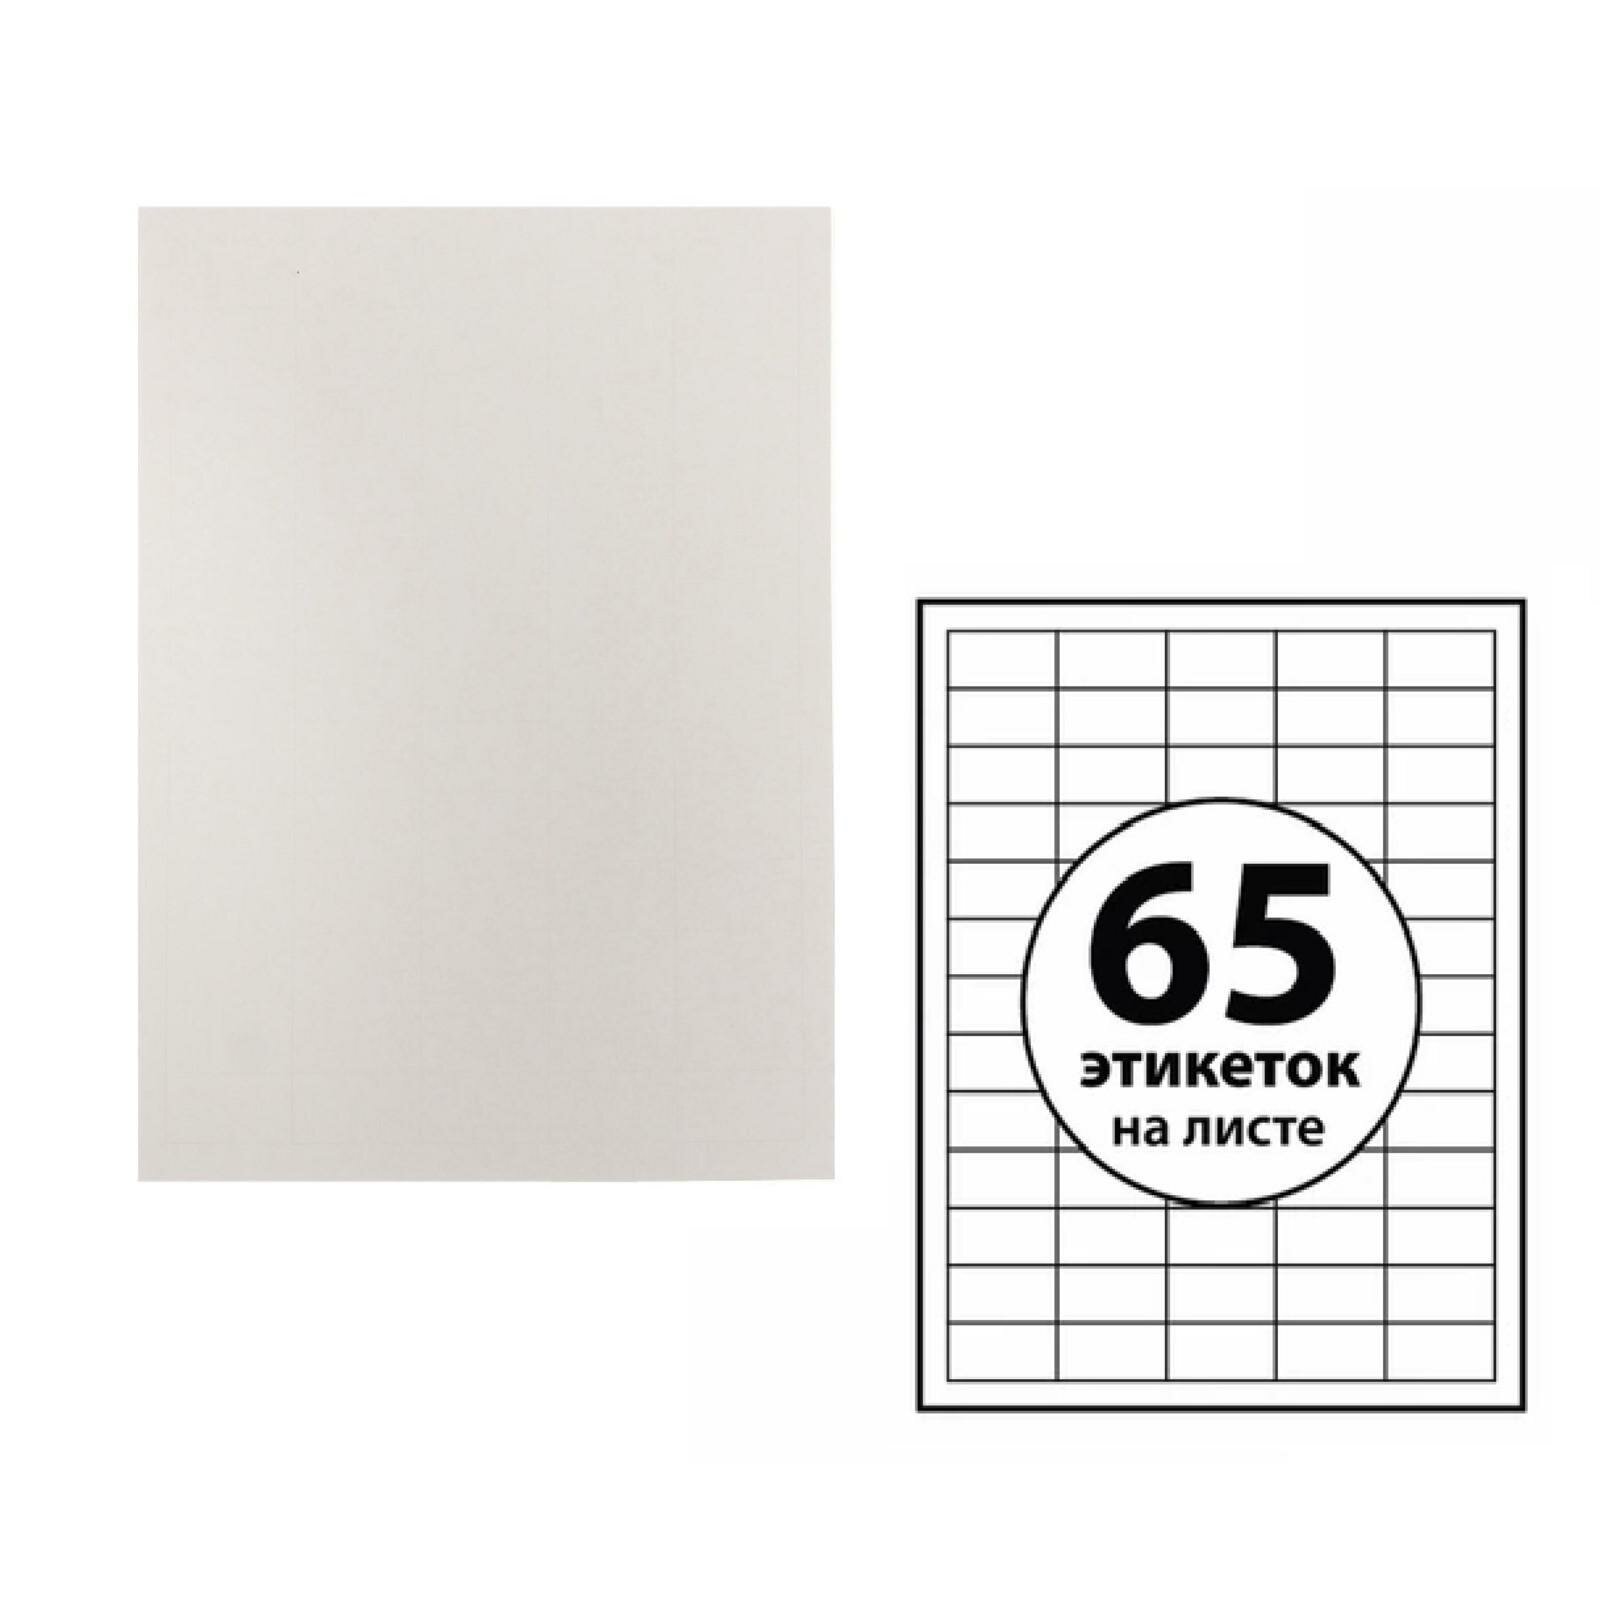 Этикетки А4 самоклеящиеся 50 листов, 80 г/м, на листе 65 этикеток, размер: 38 х 21,2 мм, глянцевые, белые (1шт.)